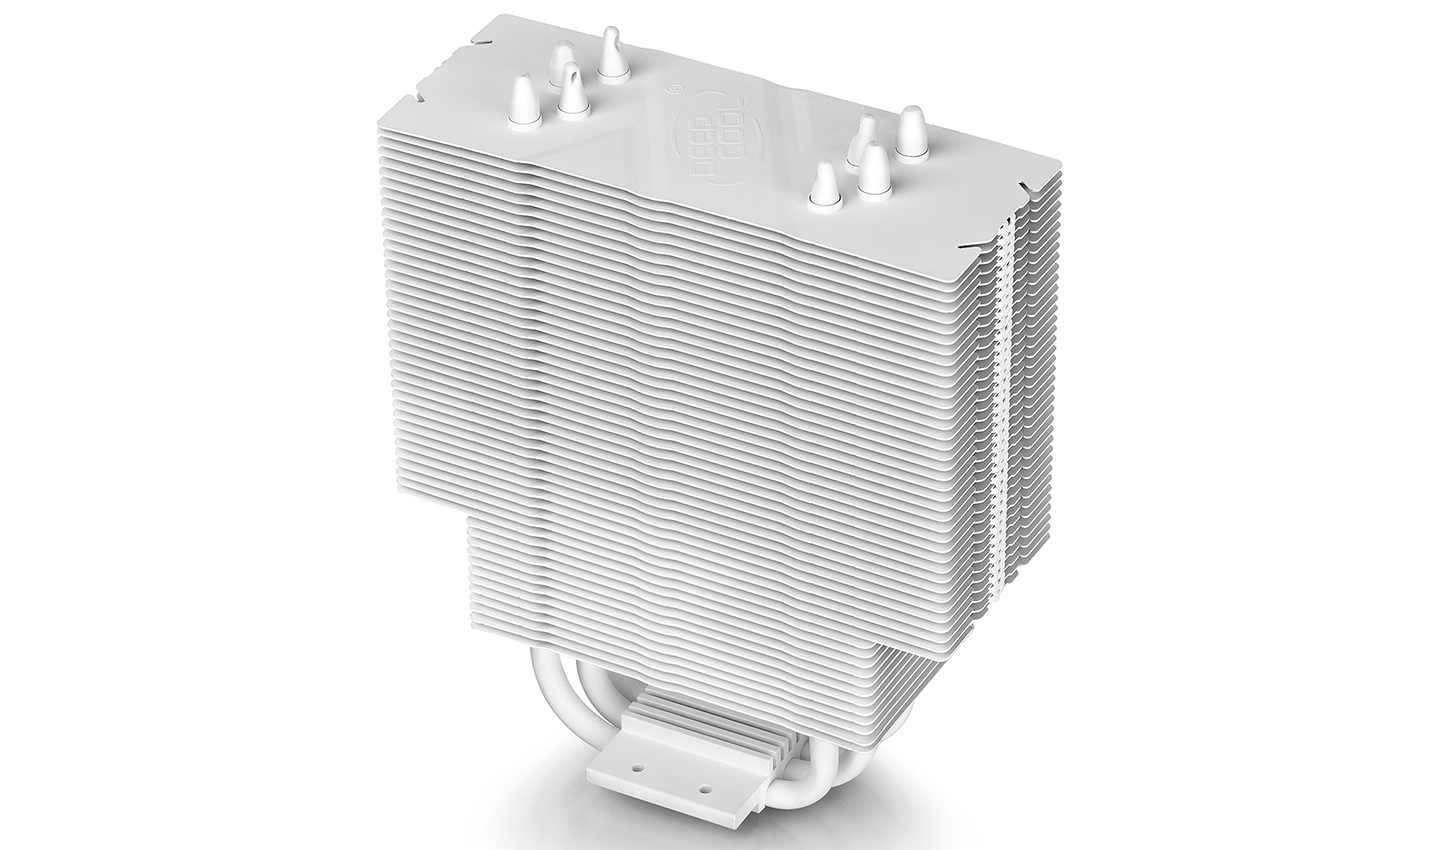 DEEPCOOL GAMMAXX 400 Ventirad CPU Ventilateur 120mm - LED Blanc avec  Quadrimedia